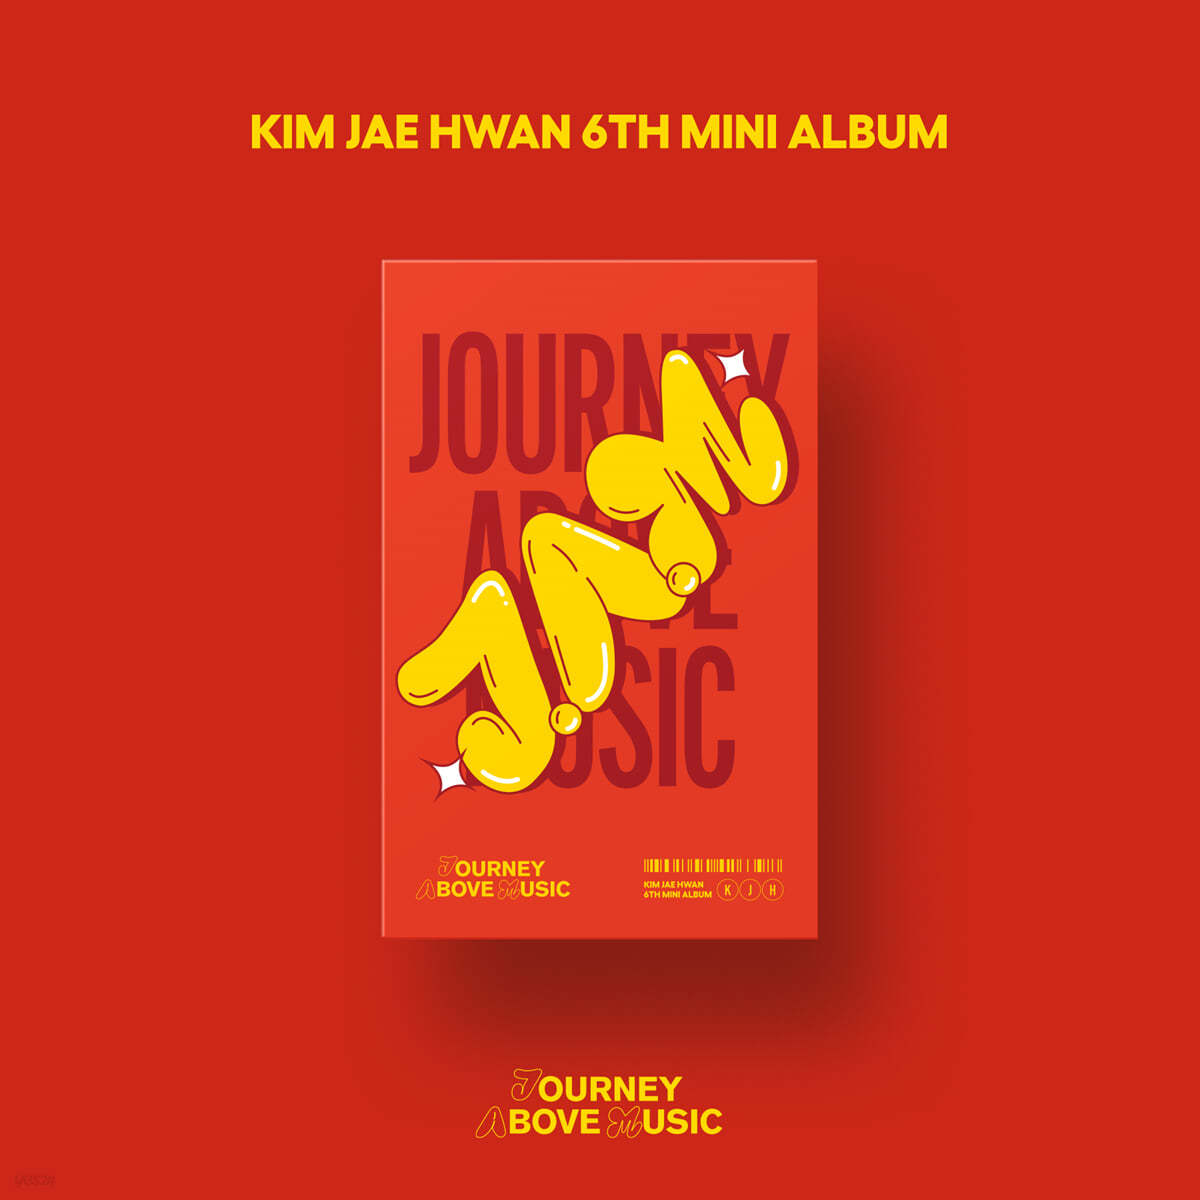 김재환 - 미니앨범 6집 : J.A.M (Journey Above Music)[Platform ver.]